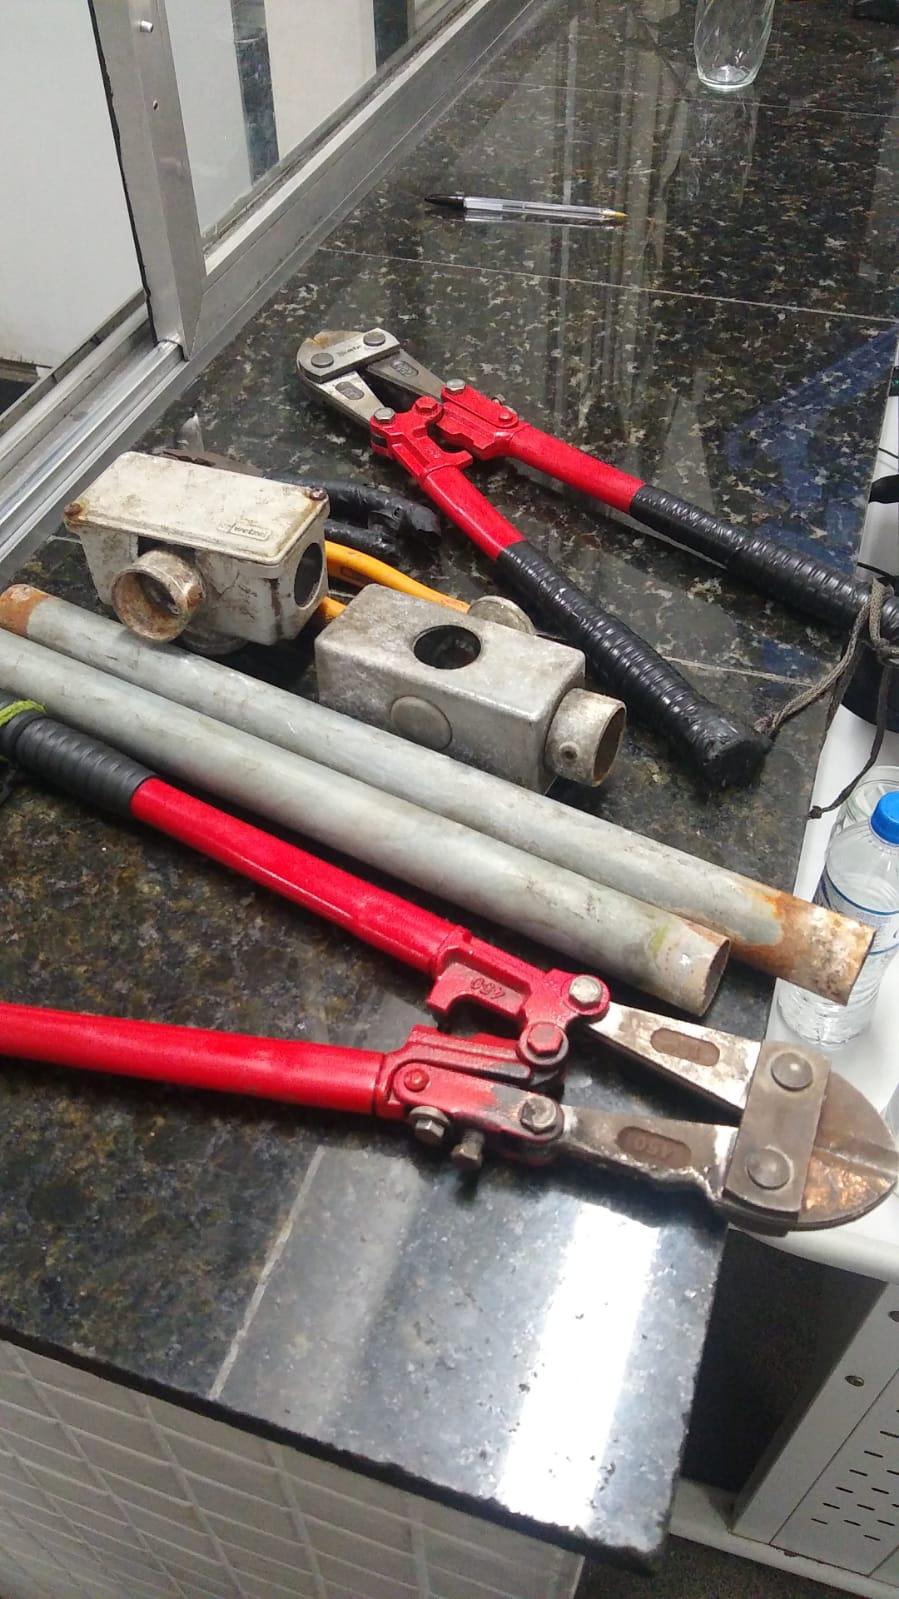 ferramentas usadas no crime #paratodosverem